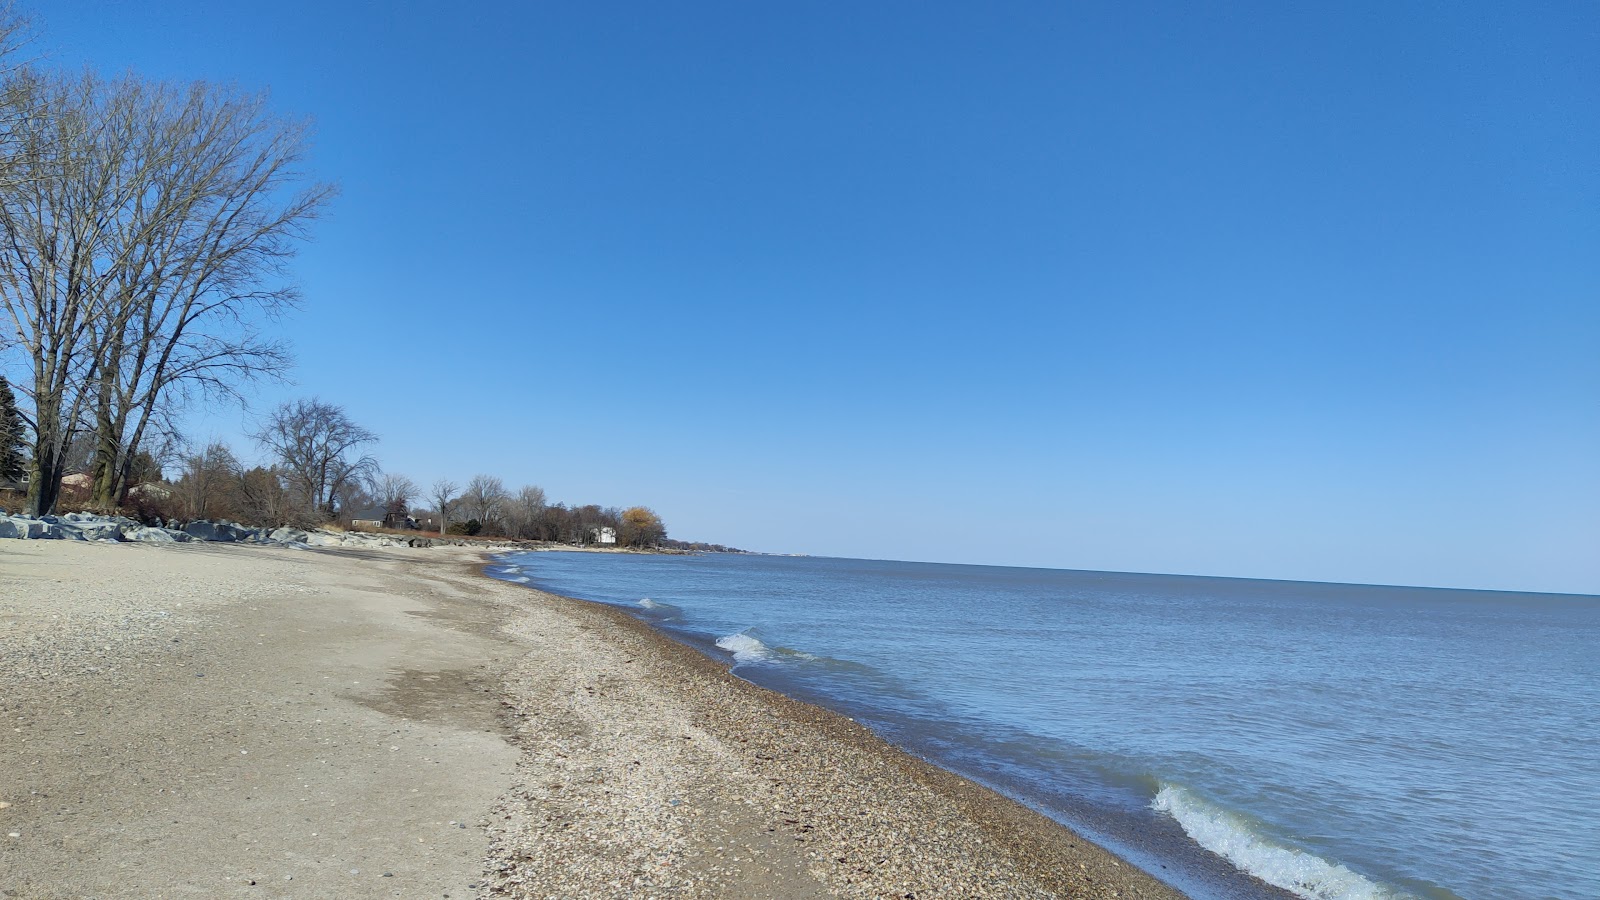 Carol Beach'in fotoğrafı gri kum ve çakıl yüzey ile